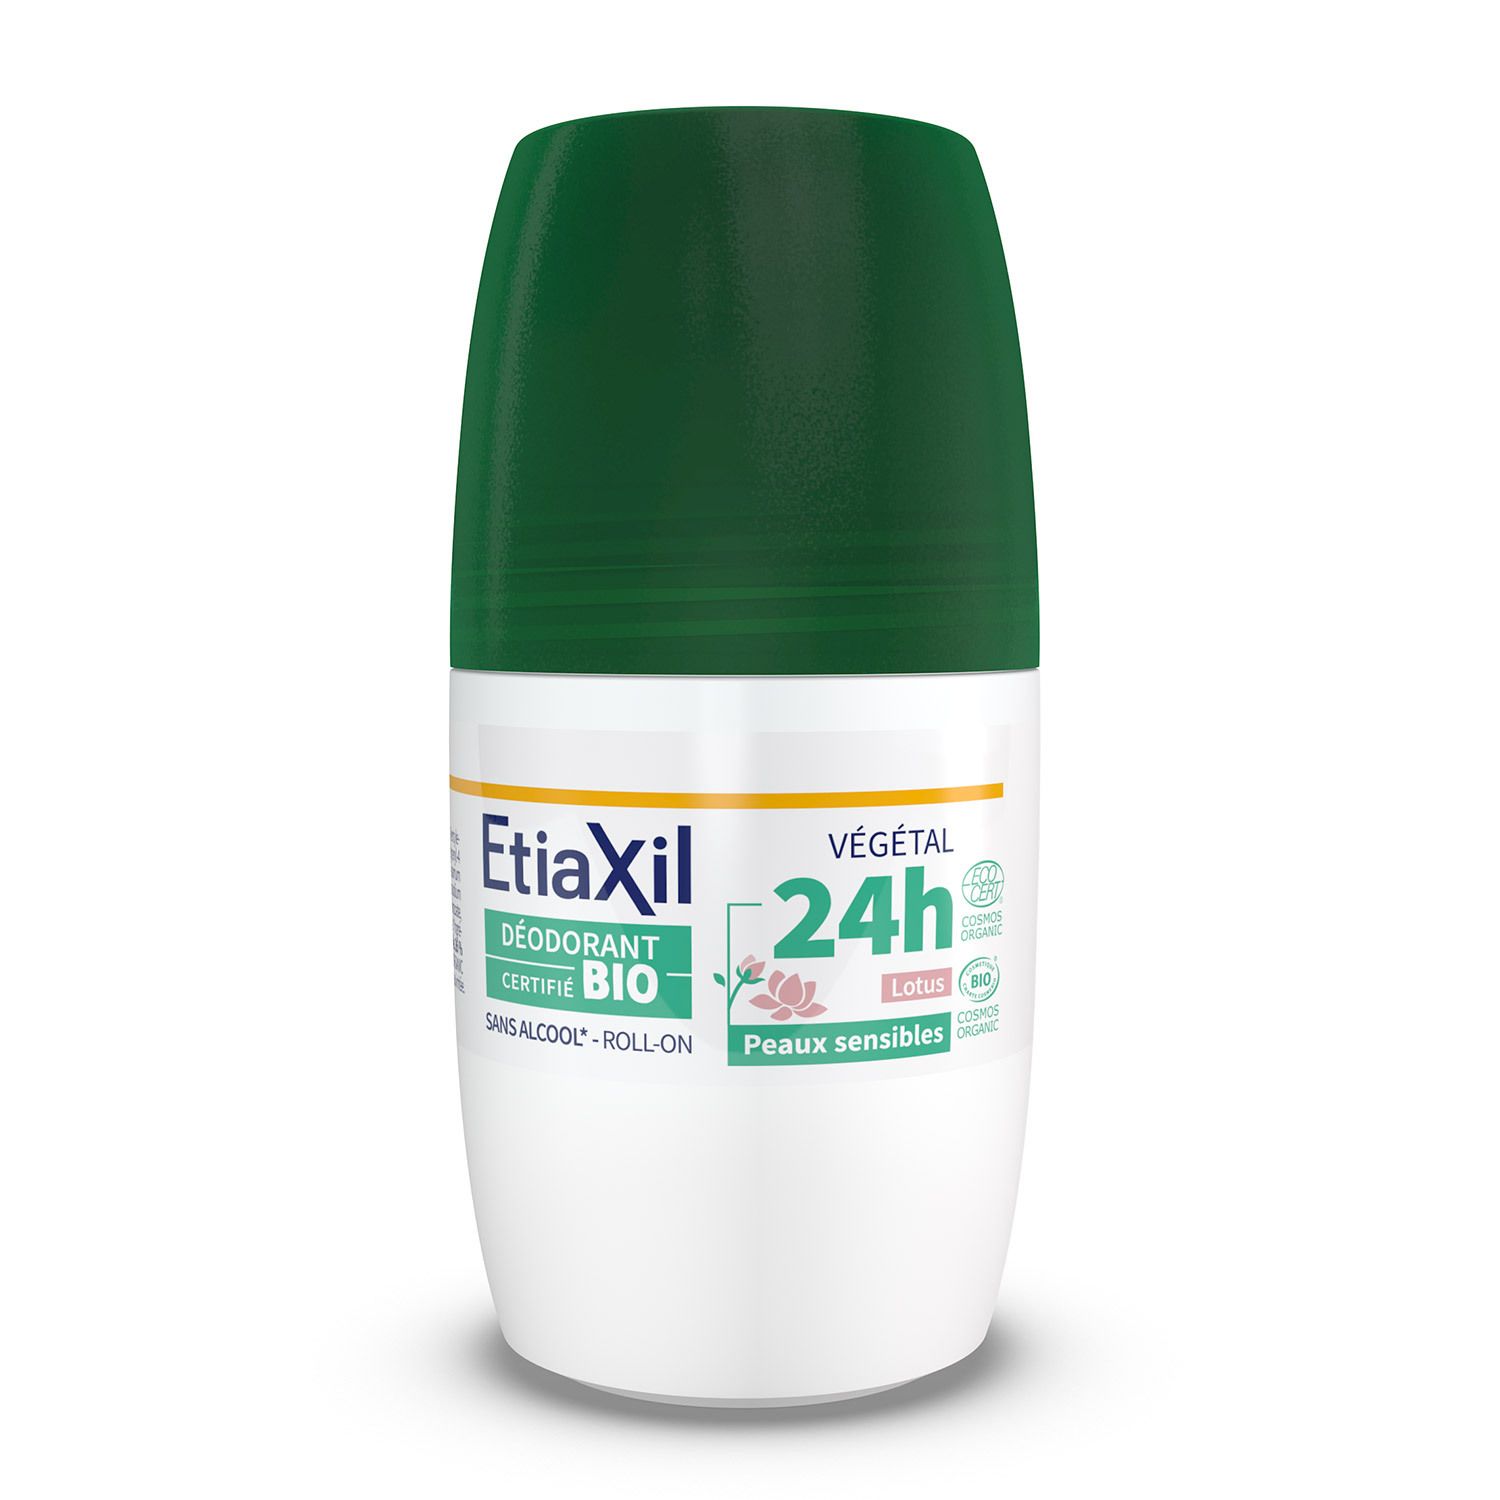 Etiaxil - Déodorant Végétal - Certifié BIO Parfum Lotus 24H - Aisselles - Adapté aux peaux sensibles - Roll-on - 50 ml